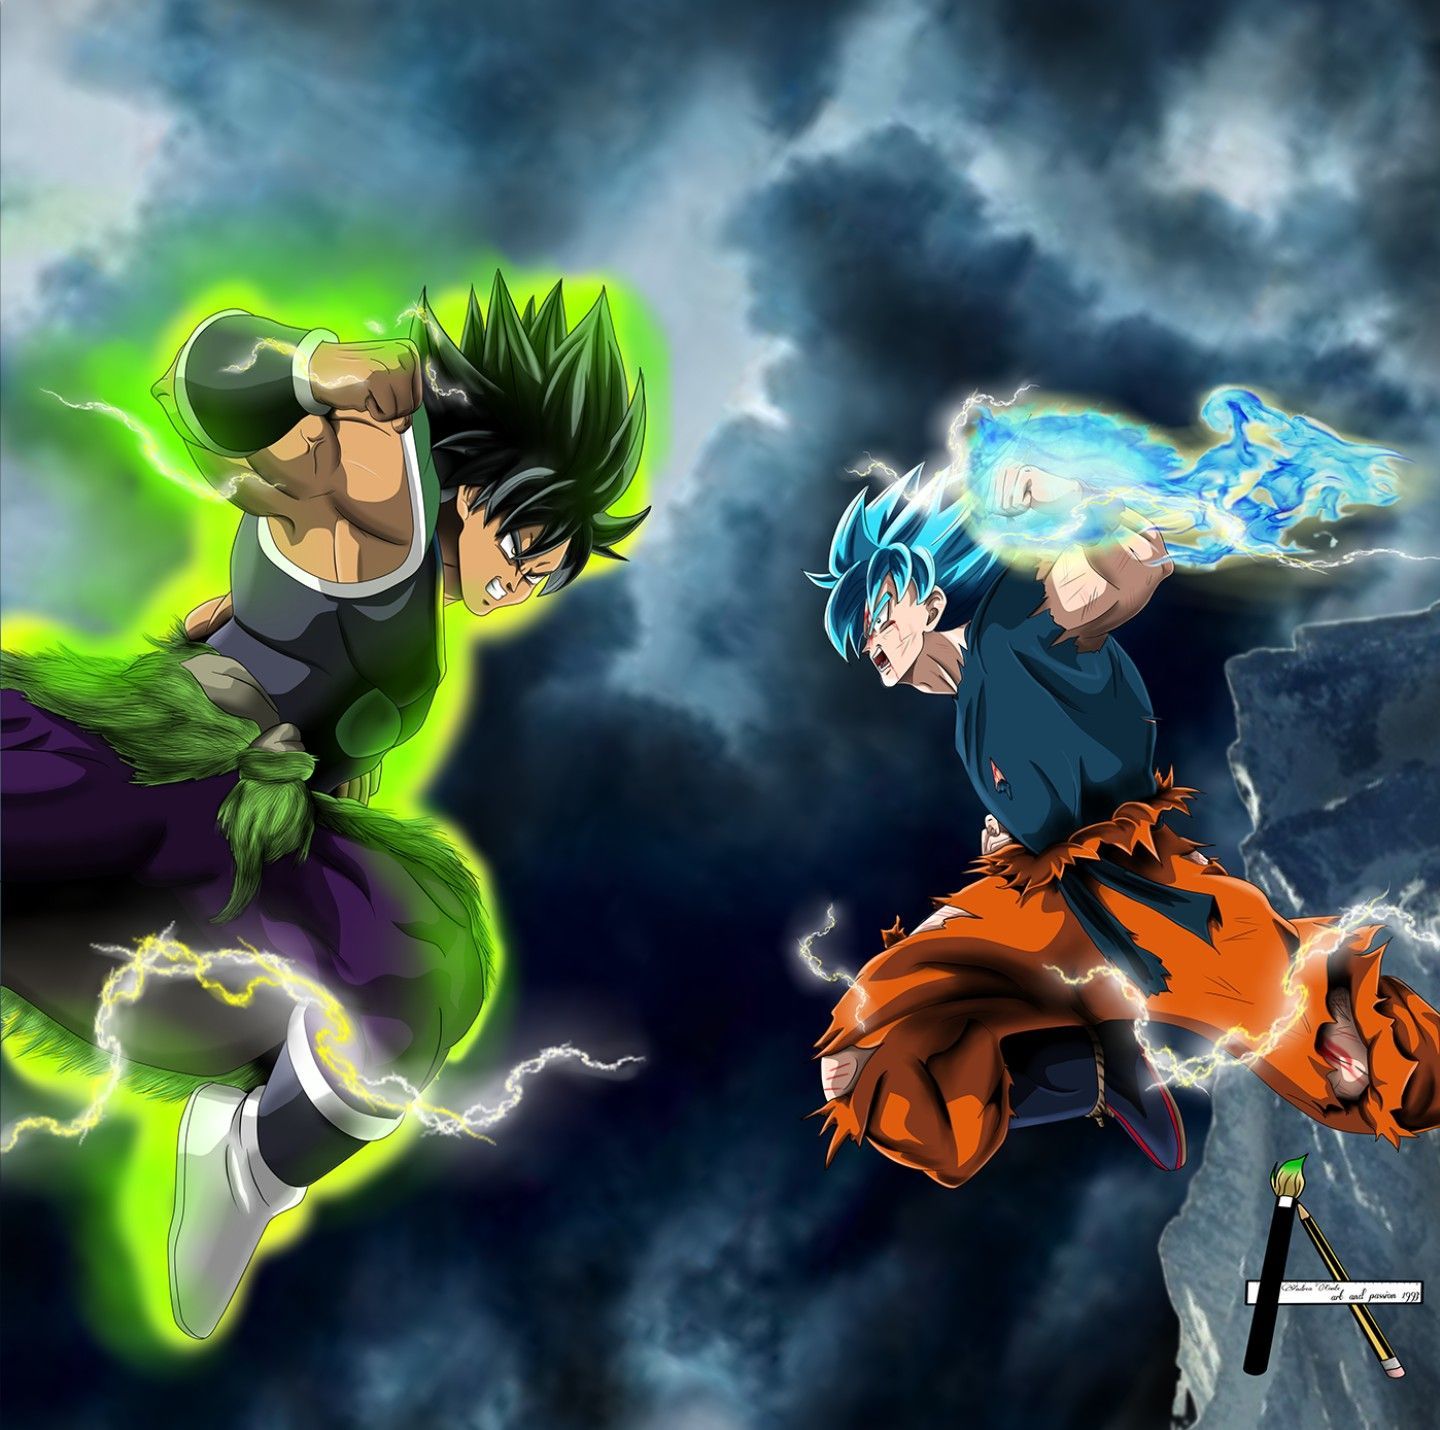 Broly Vs. Goku Super Saiyan Blue, Dragon Ball Super. Dragon ball super goku, Dragon ball artwork, Dragon ball art